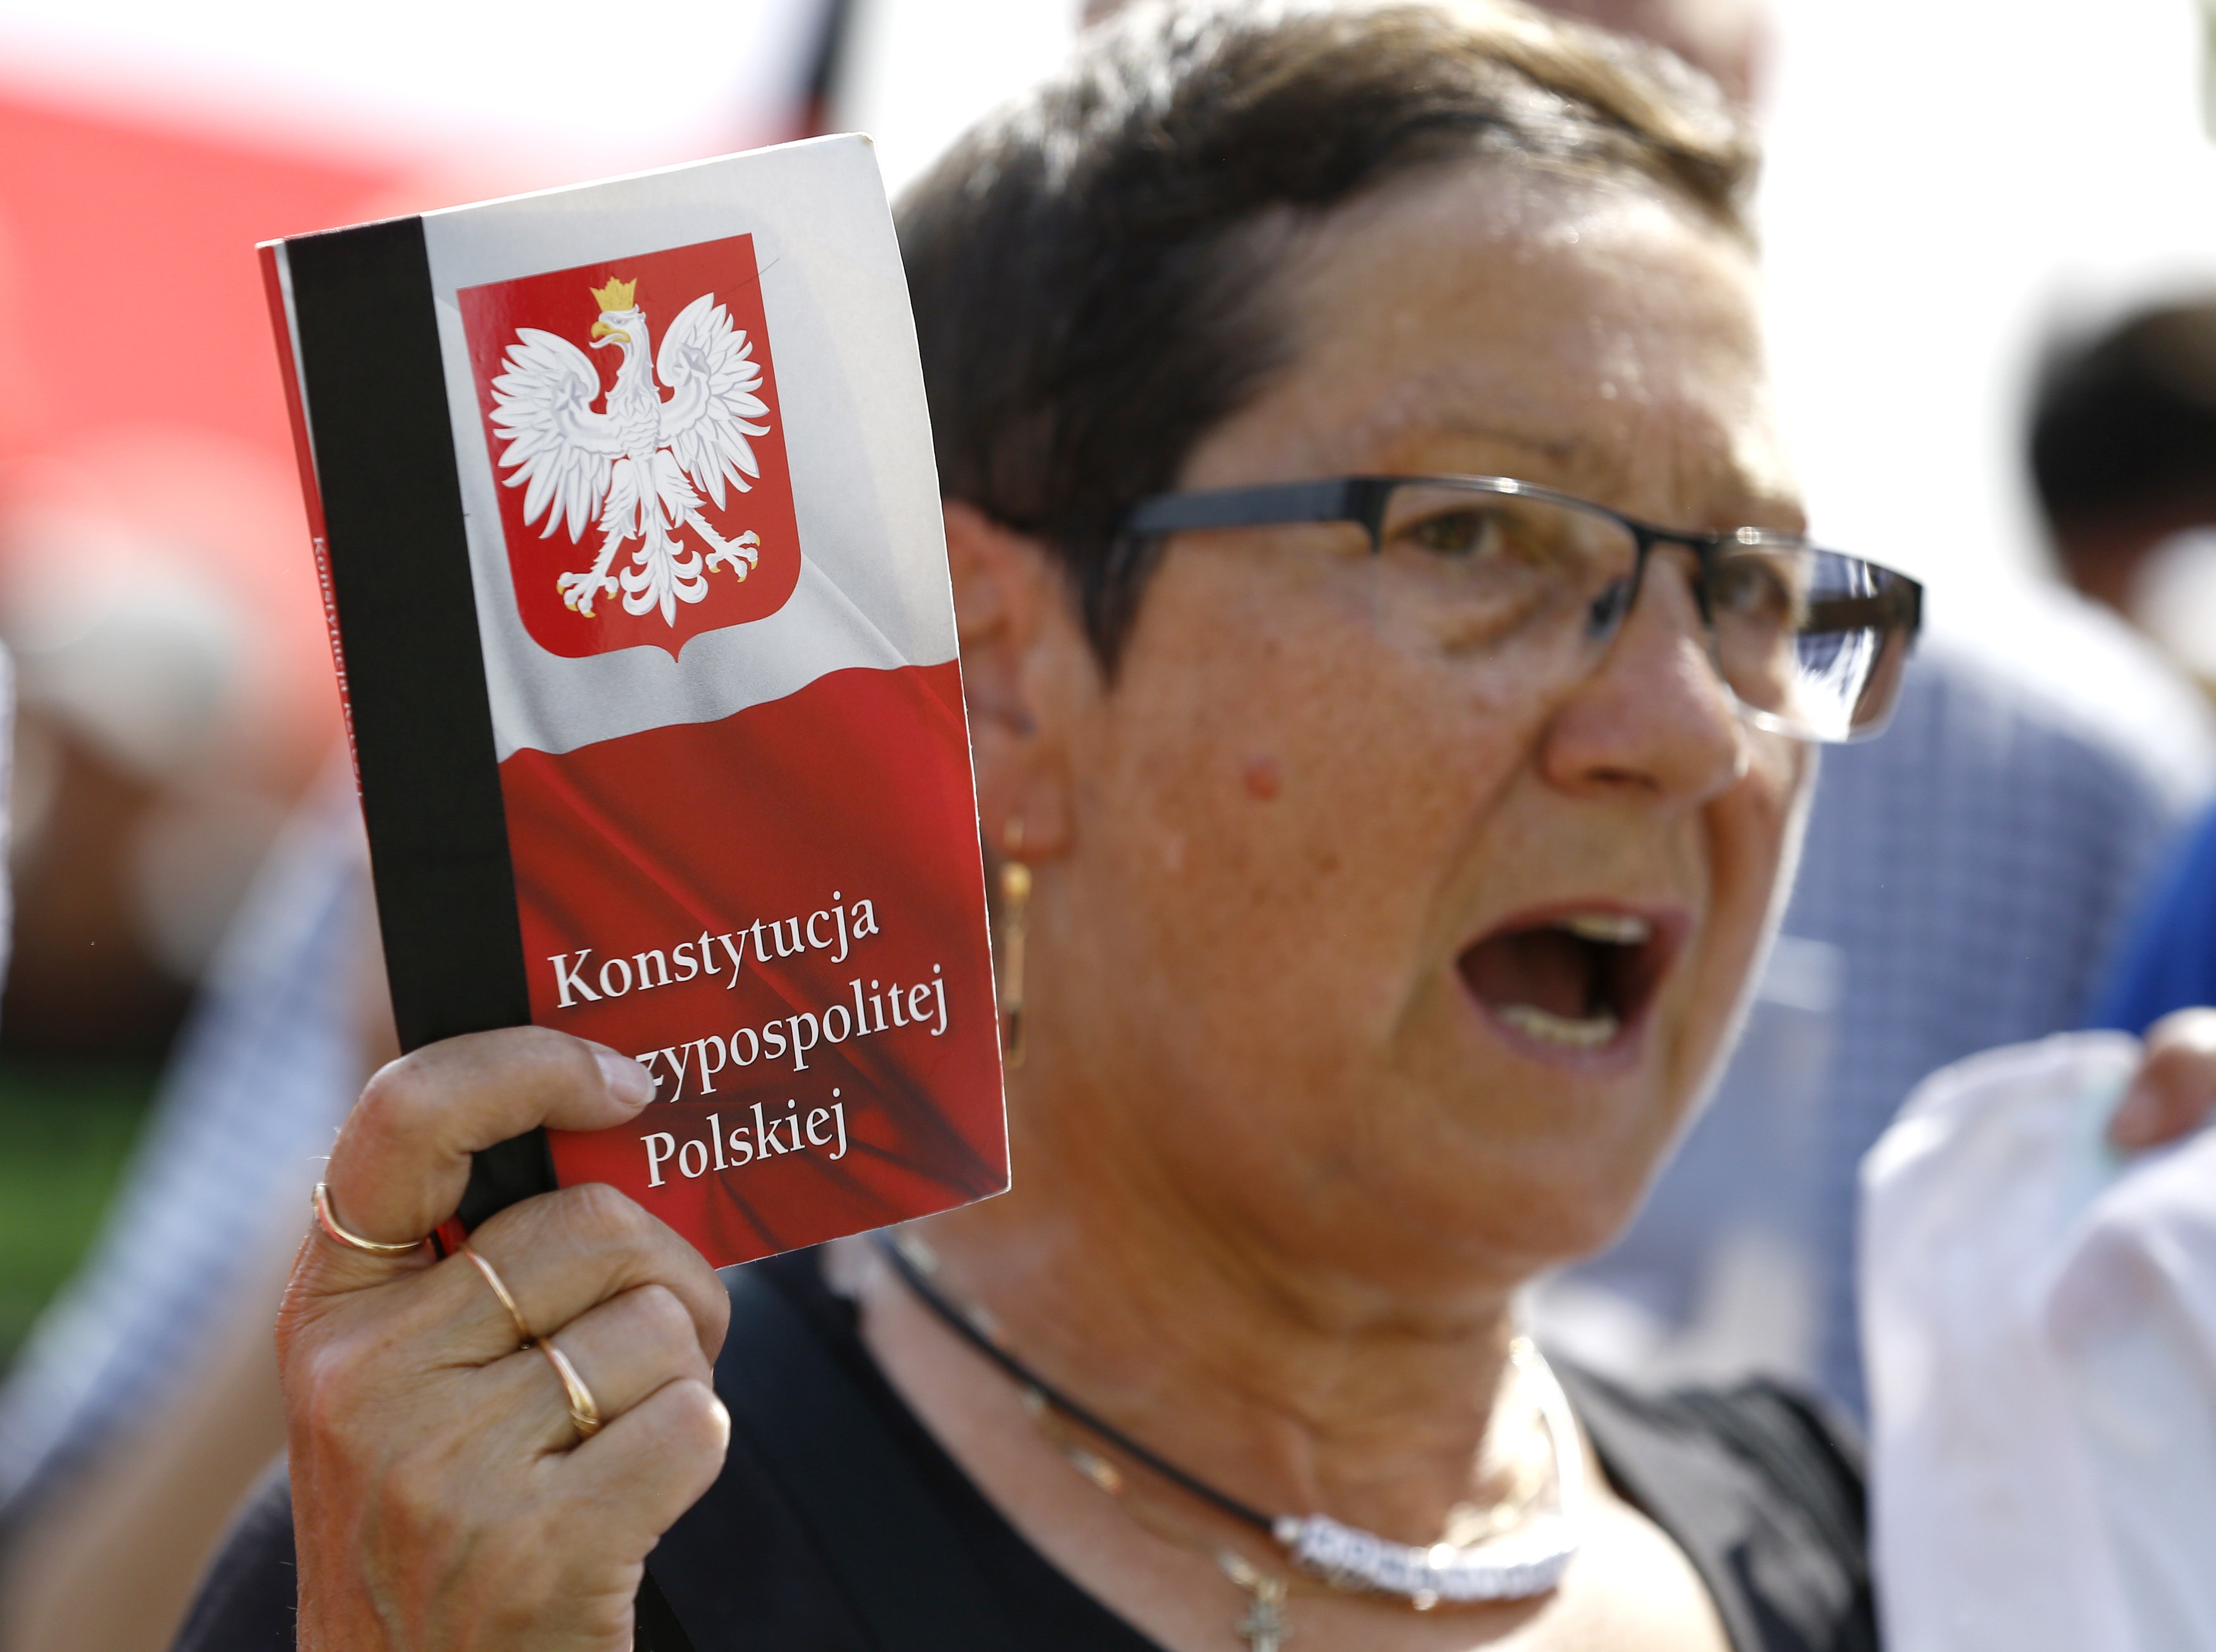 Σκληρό καμπάνακι ΕΕ σε Πολωνία για Δικαιοσύνη, απειλεί άμεσα με το άρθρο 7